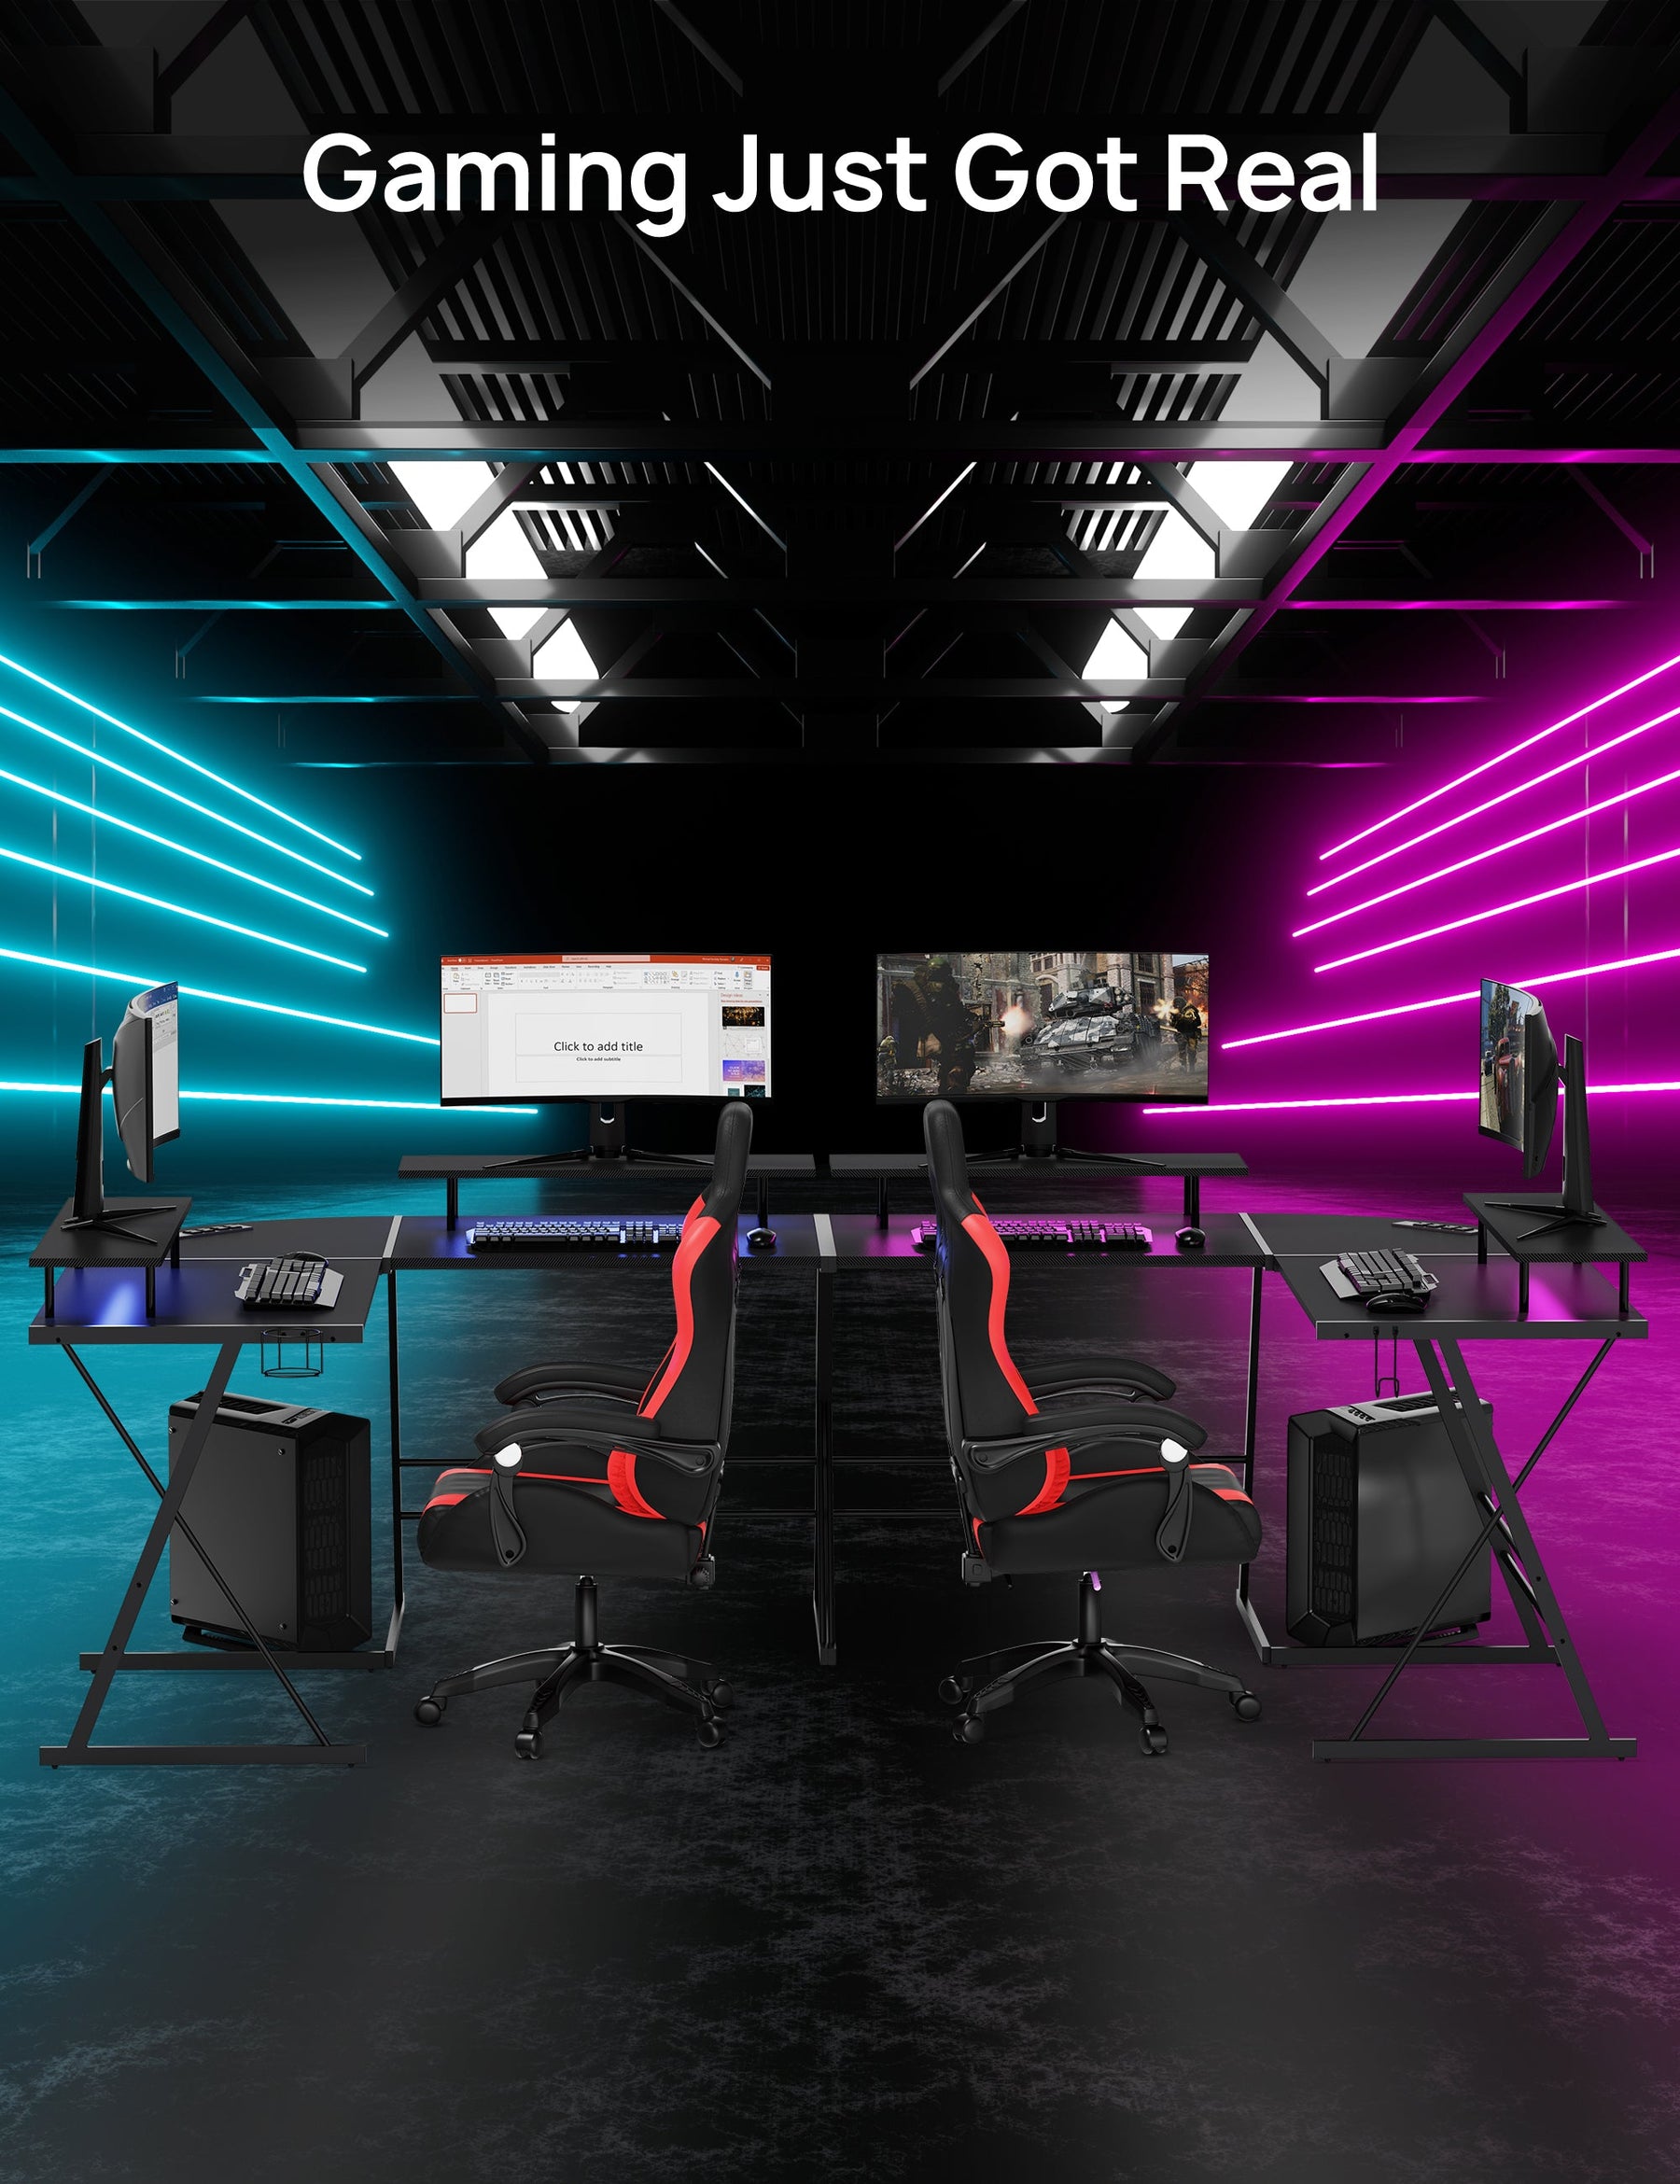 L-Shaped Gaming Desk, 50.4" Gaming Desk